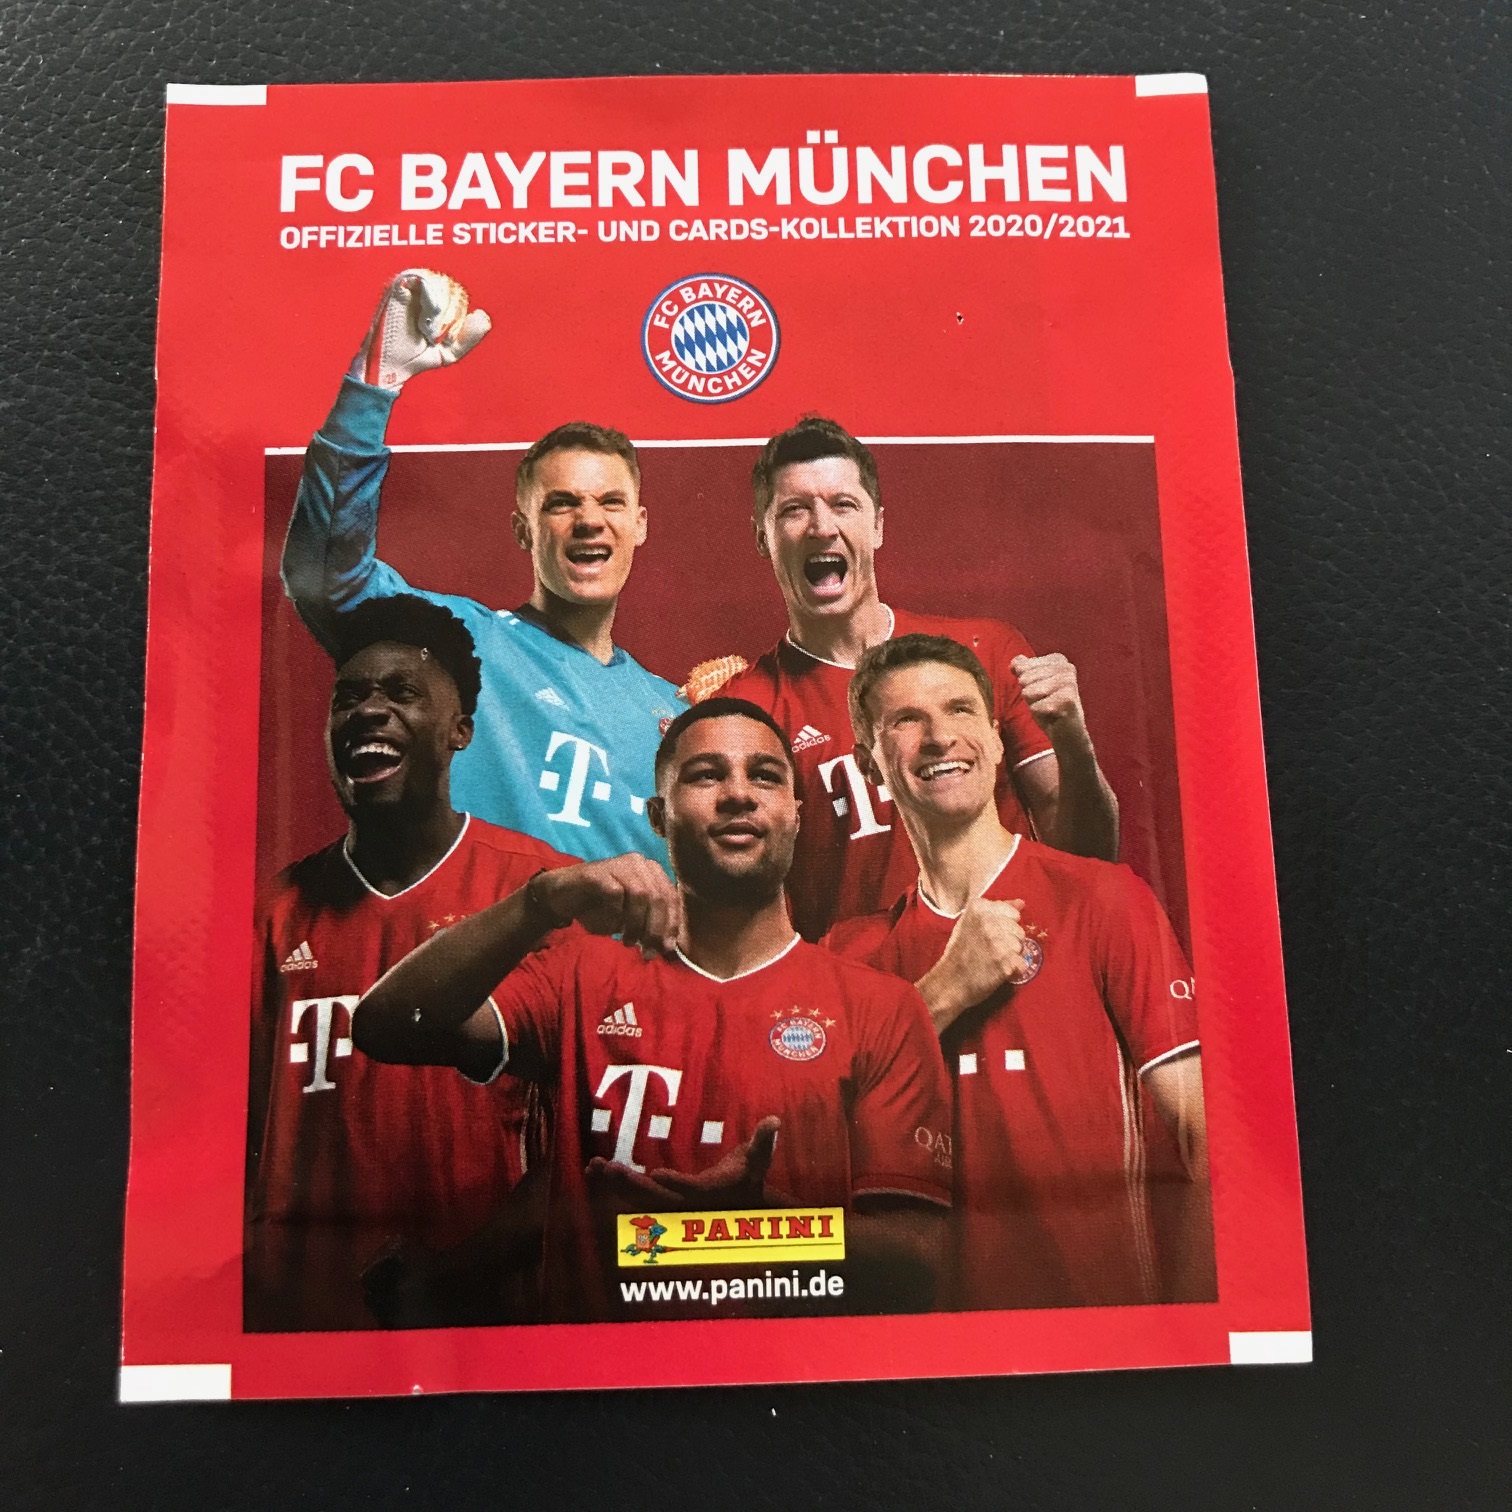 Sticker und Cards-Kollektion 2020/2021-20 Tüten Panini FC Bayern München 